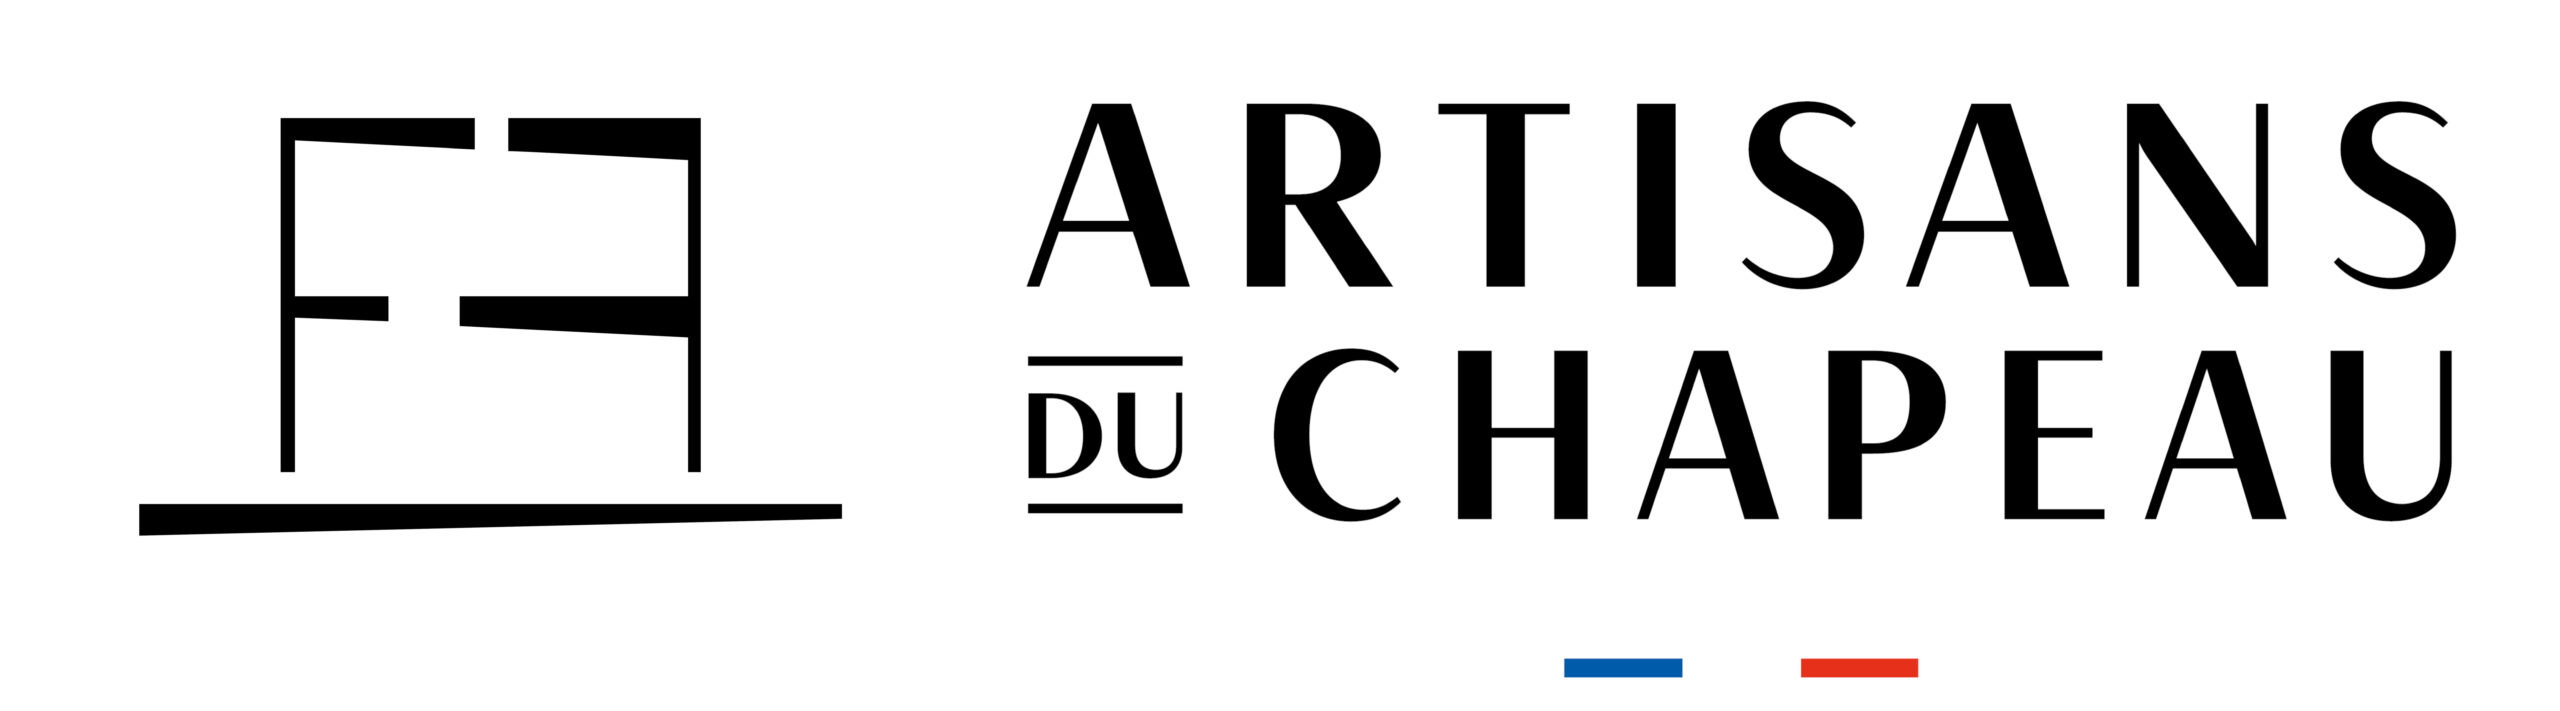 FFAC - Fédération Francaise des Artisans du Chapeau